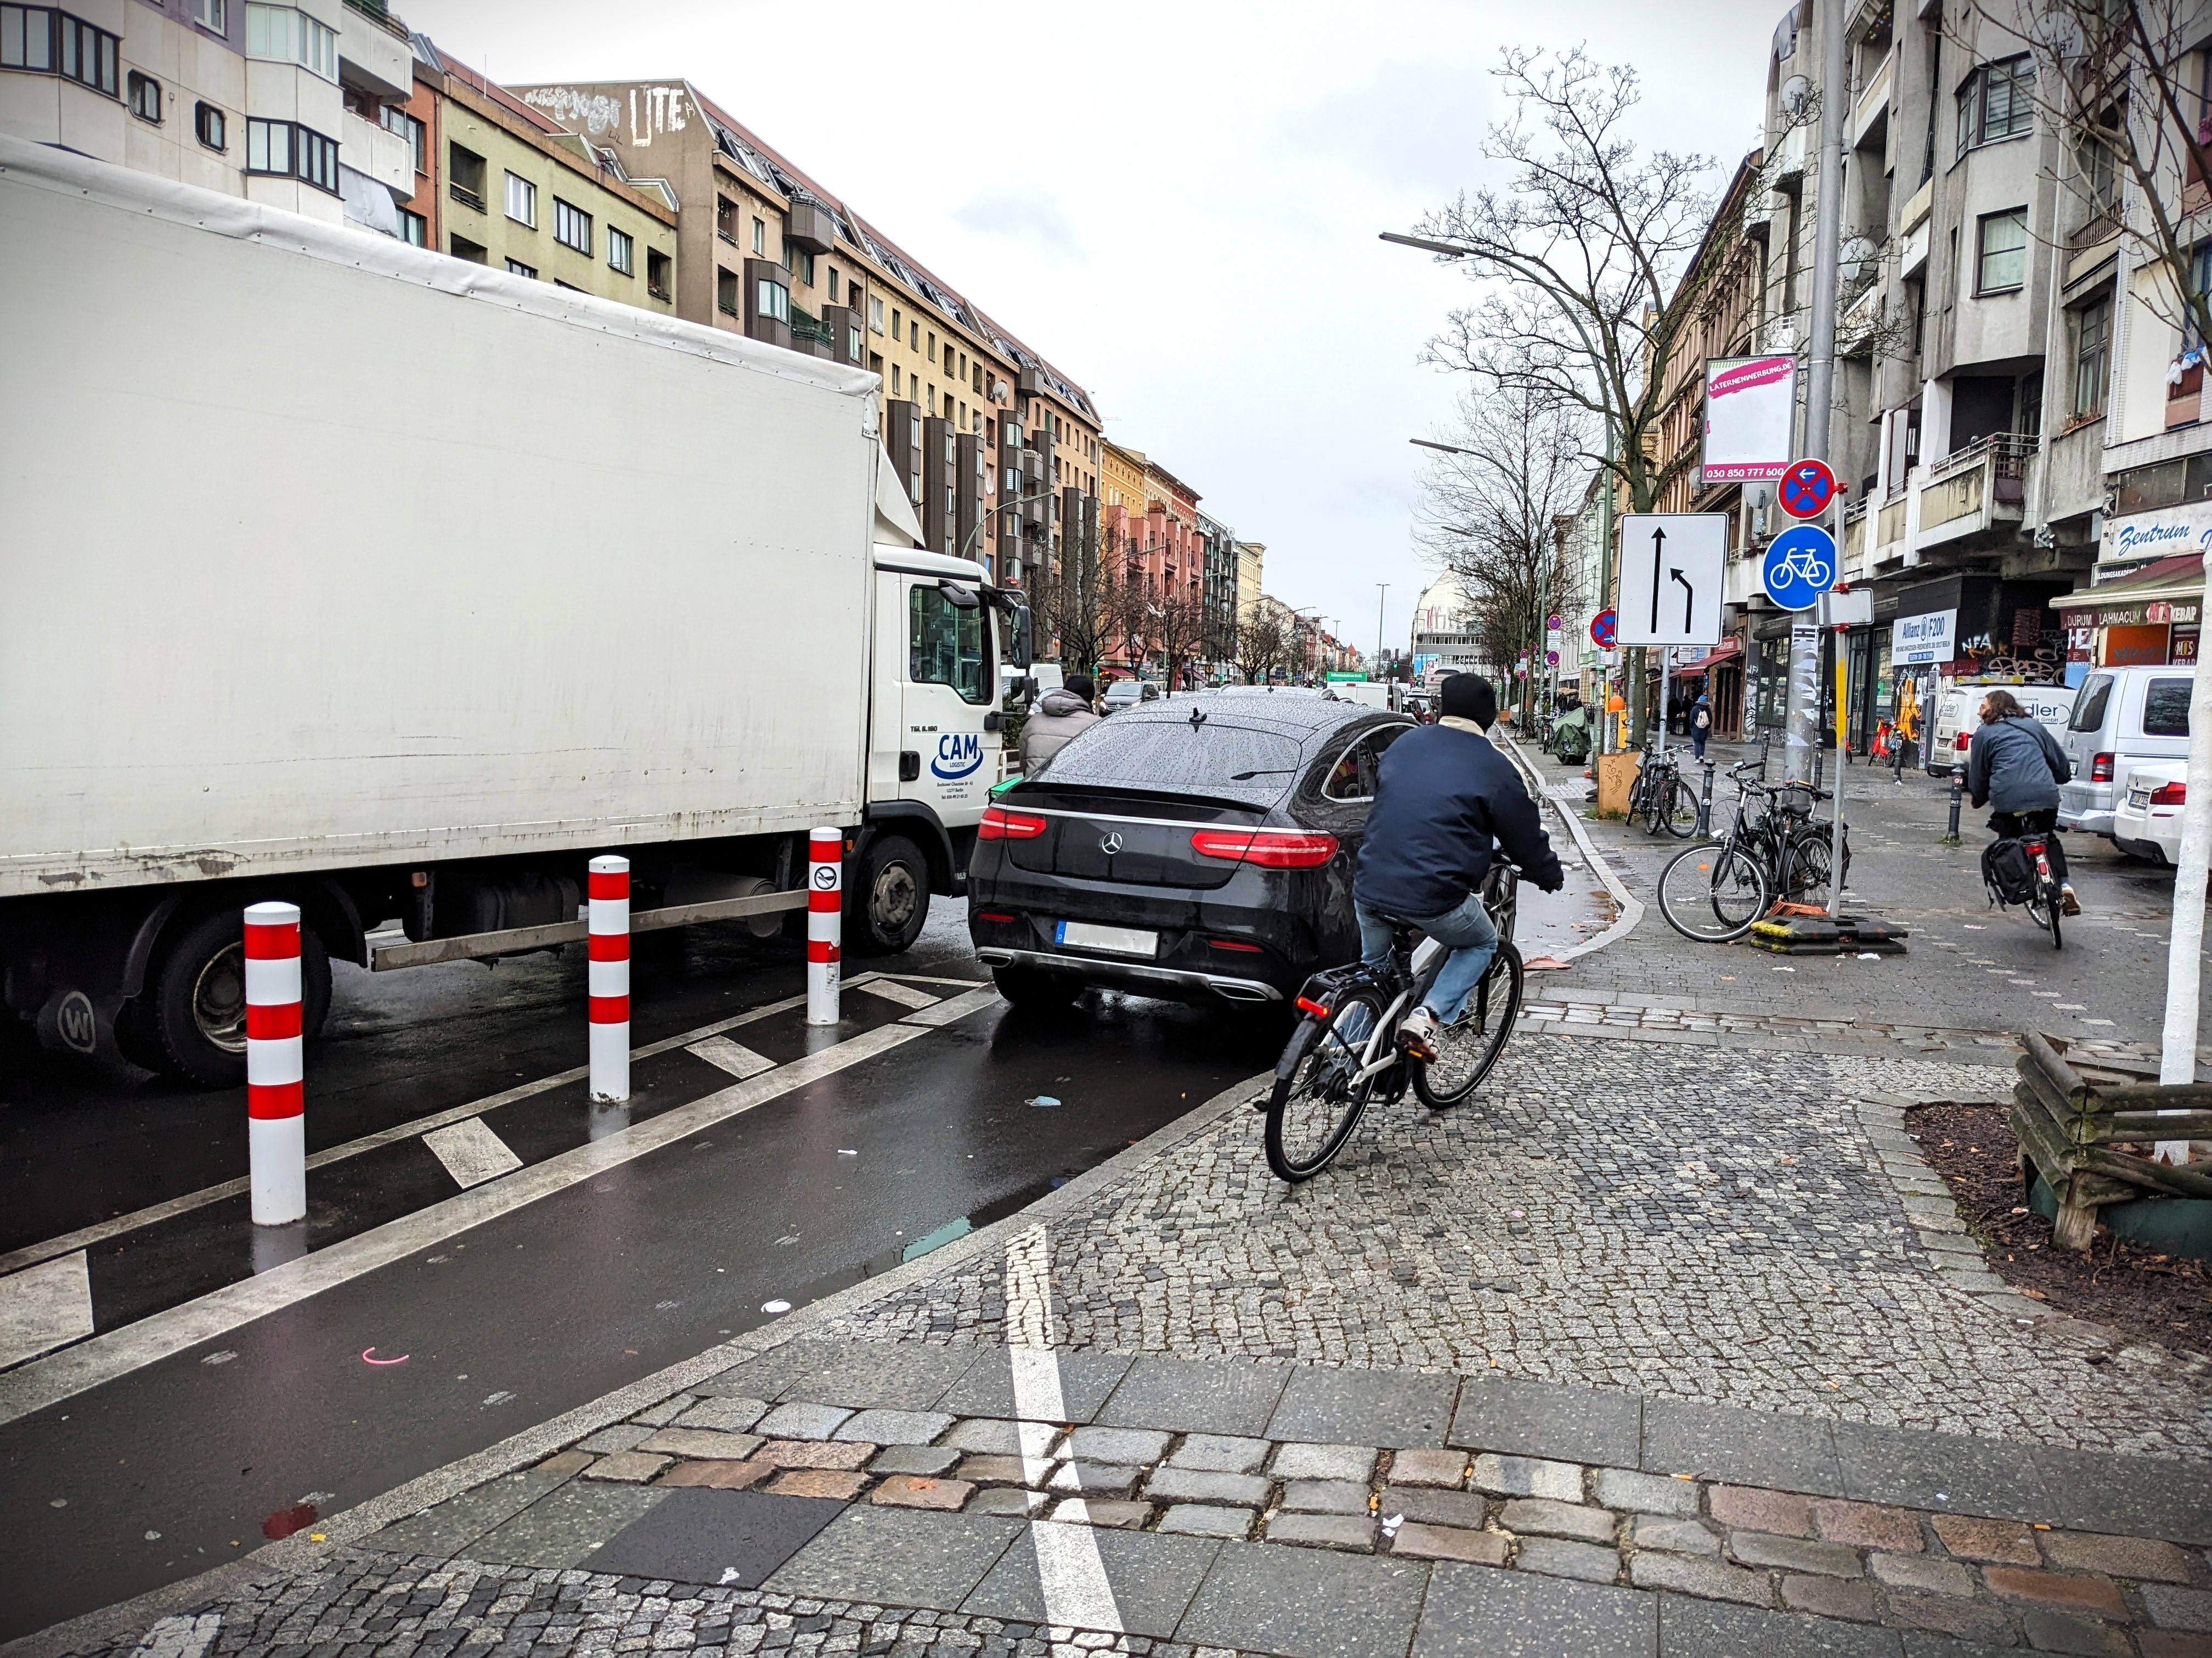 Zugeparkte Radwege tragen dazu bei, dass sich viele Radfahrende unsicher fühlen.